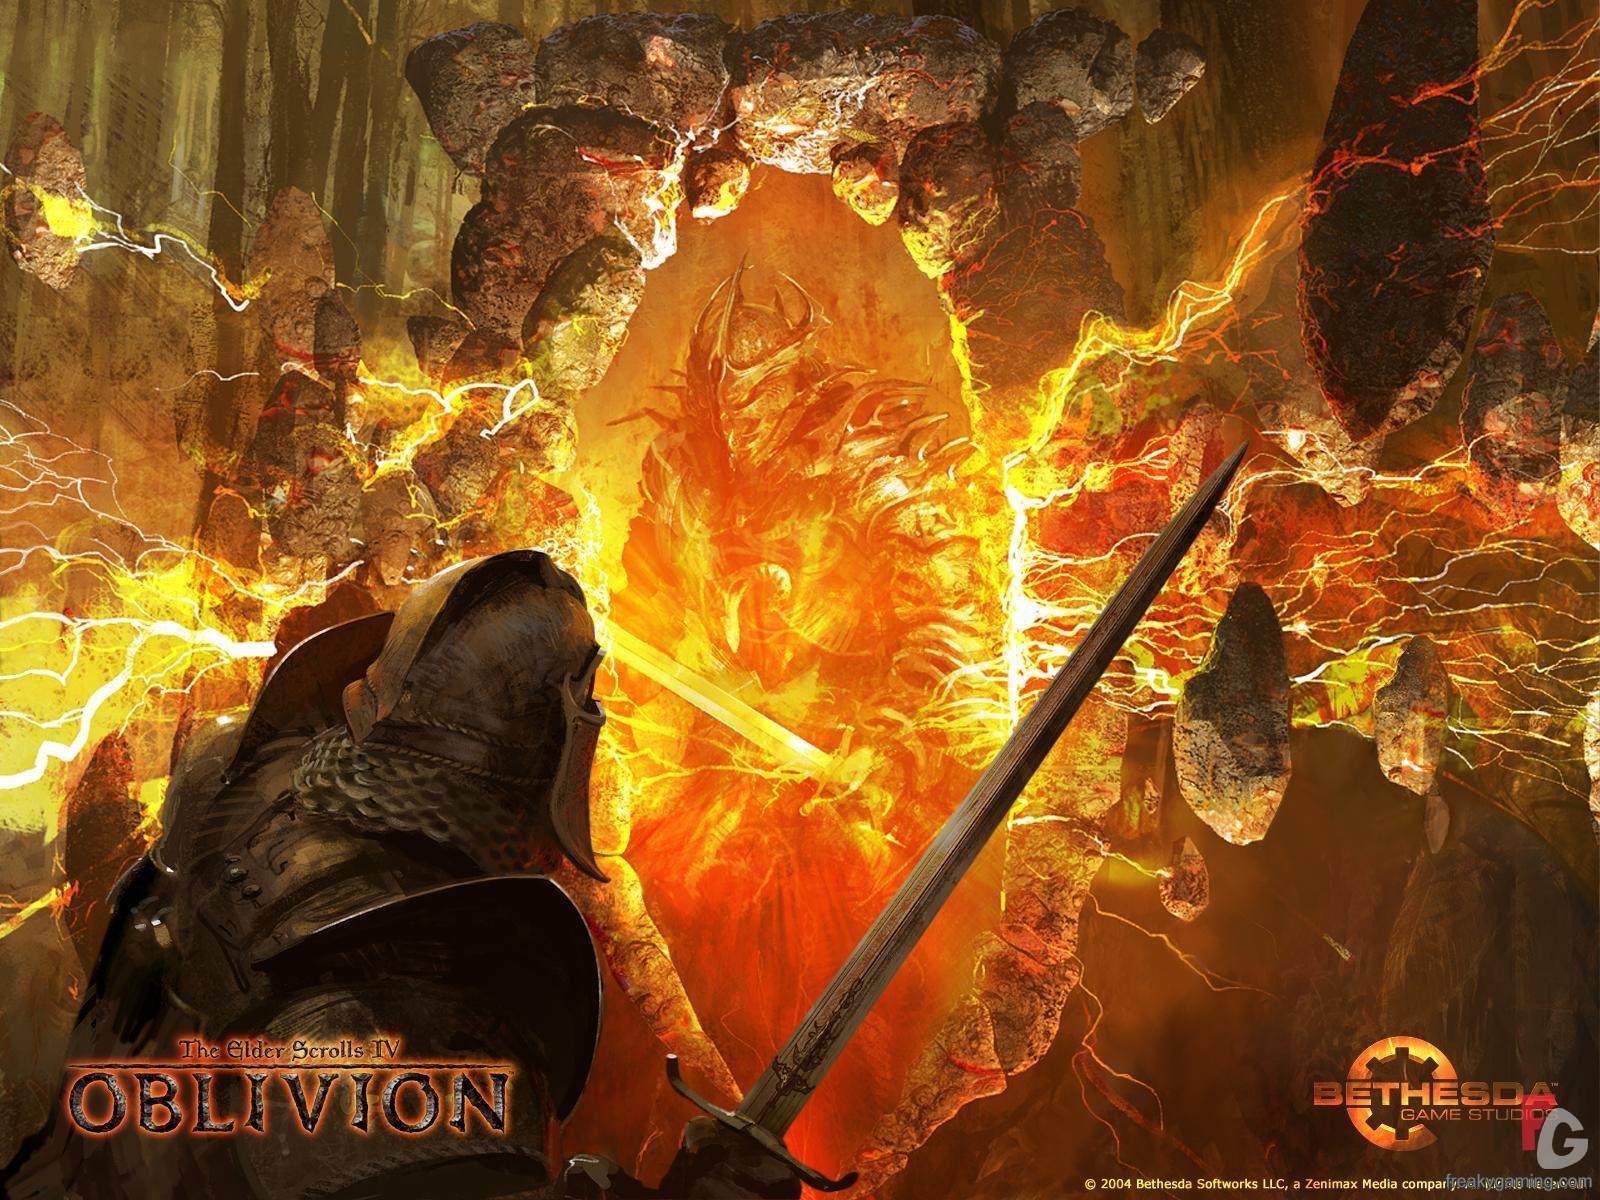 The Elder Scrolls IV: Oblivion Wallpaper and Background Imagex1200